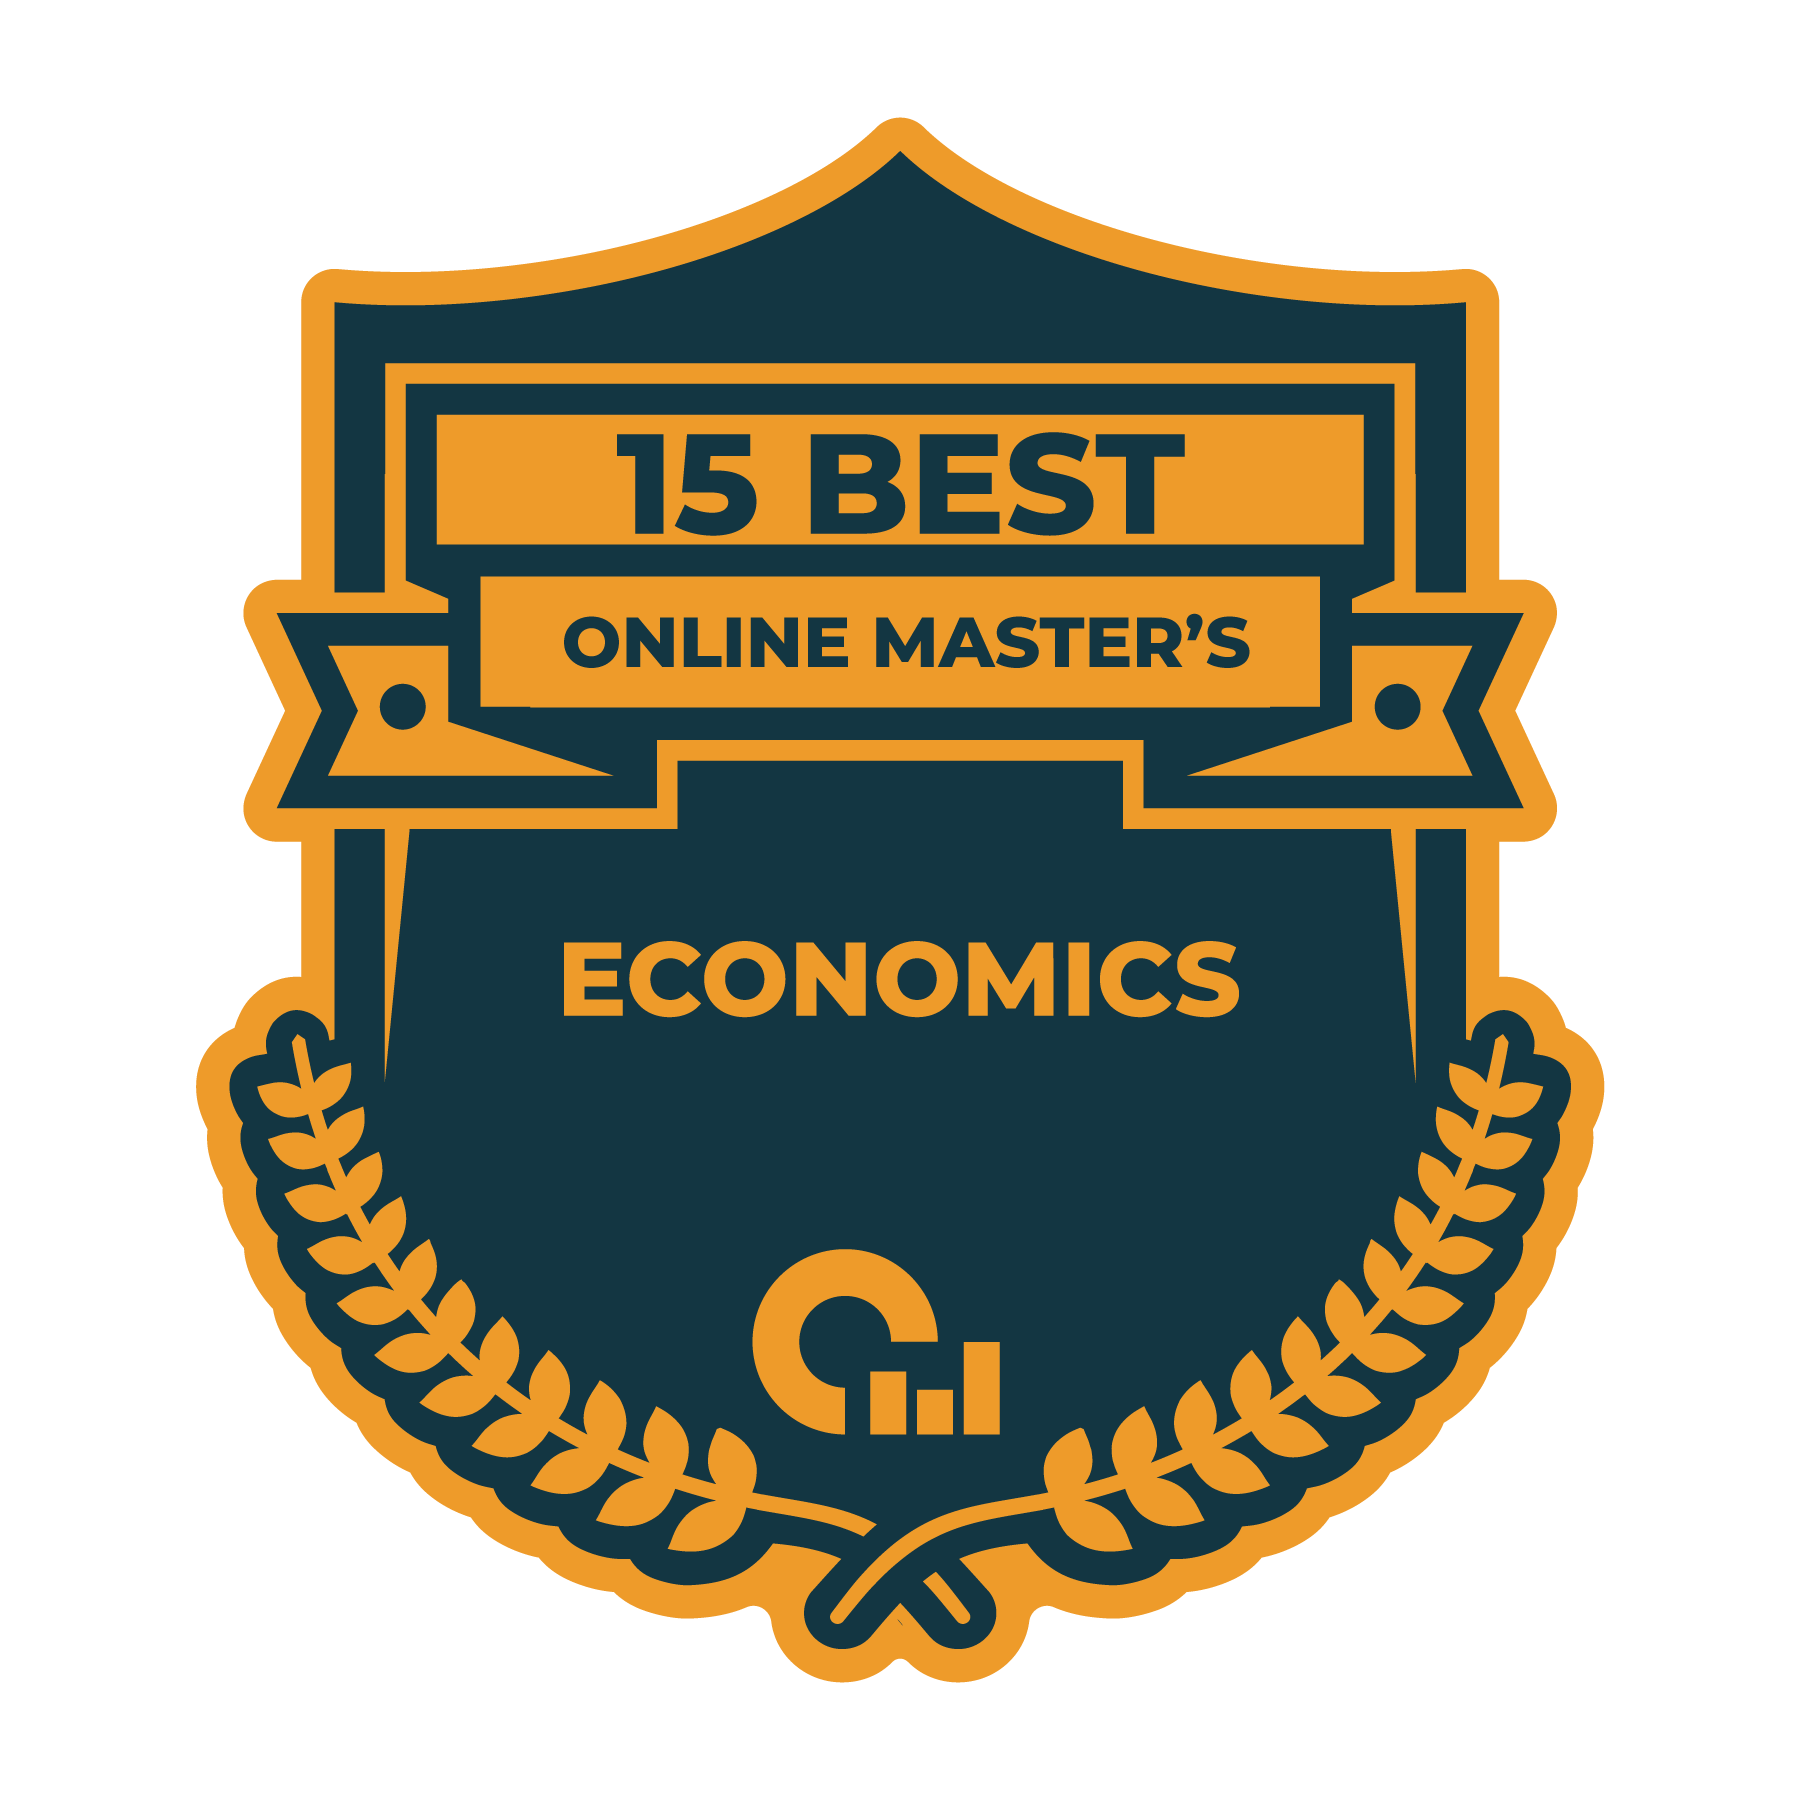 15 Best Online Master's in Economics